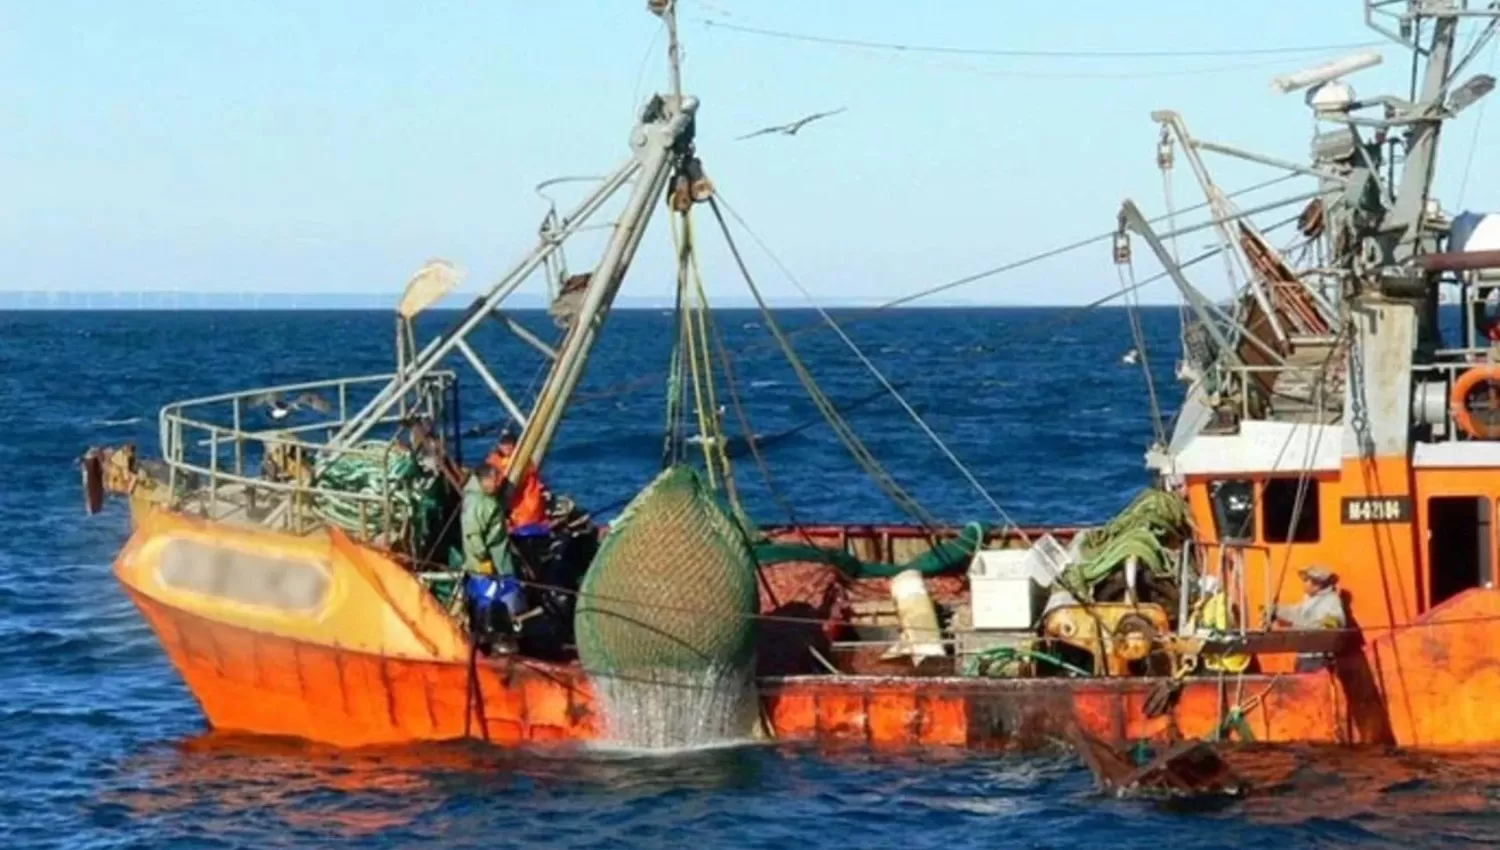 TRAGEDIA. Una persona perdió la vida tras hundirse un barco pesquero. Foto gentileza: elchubut.com.ar